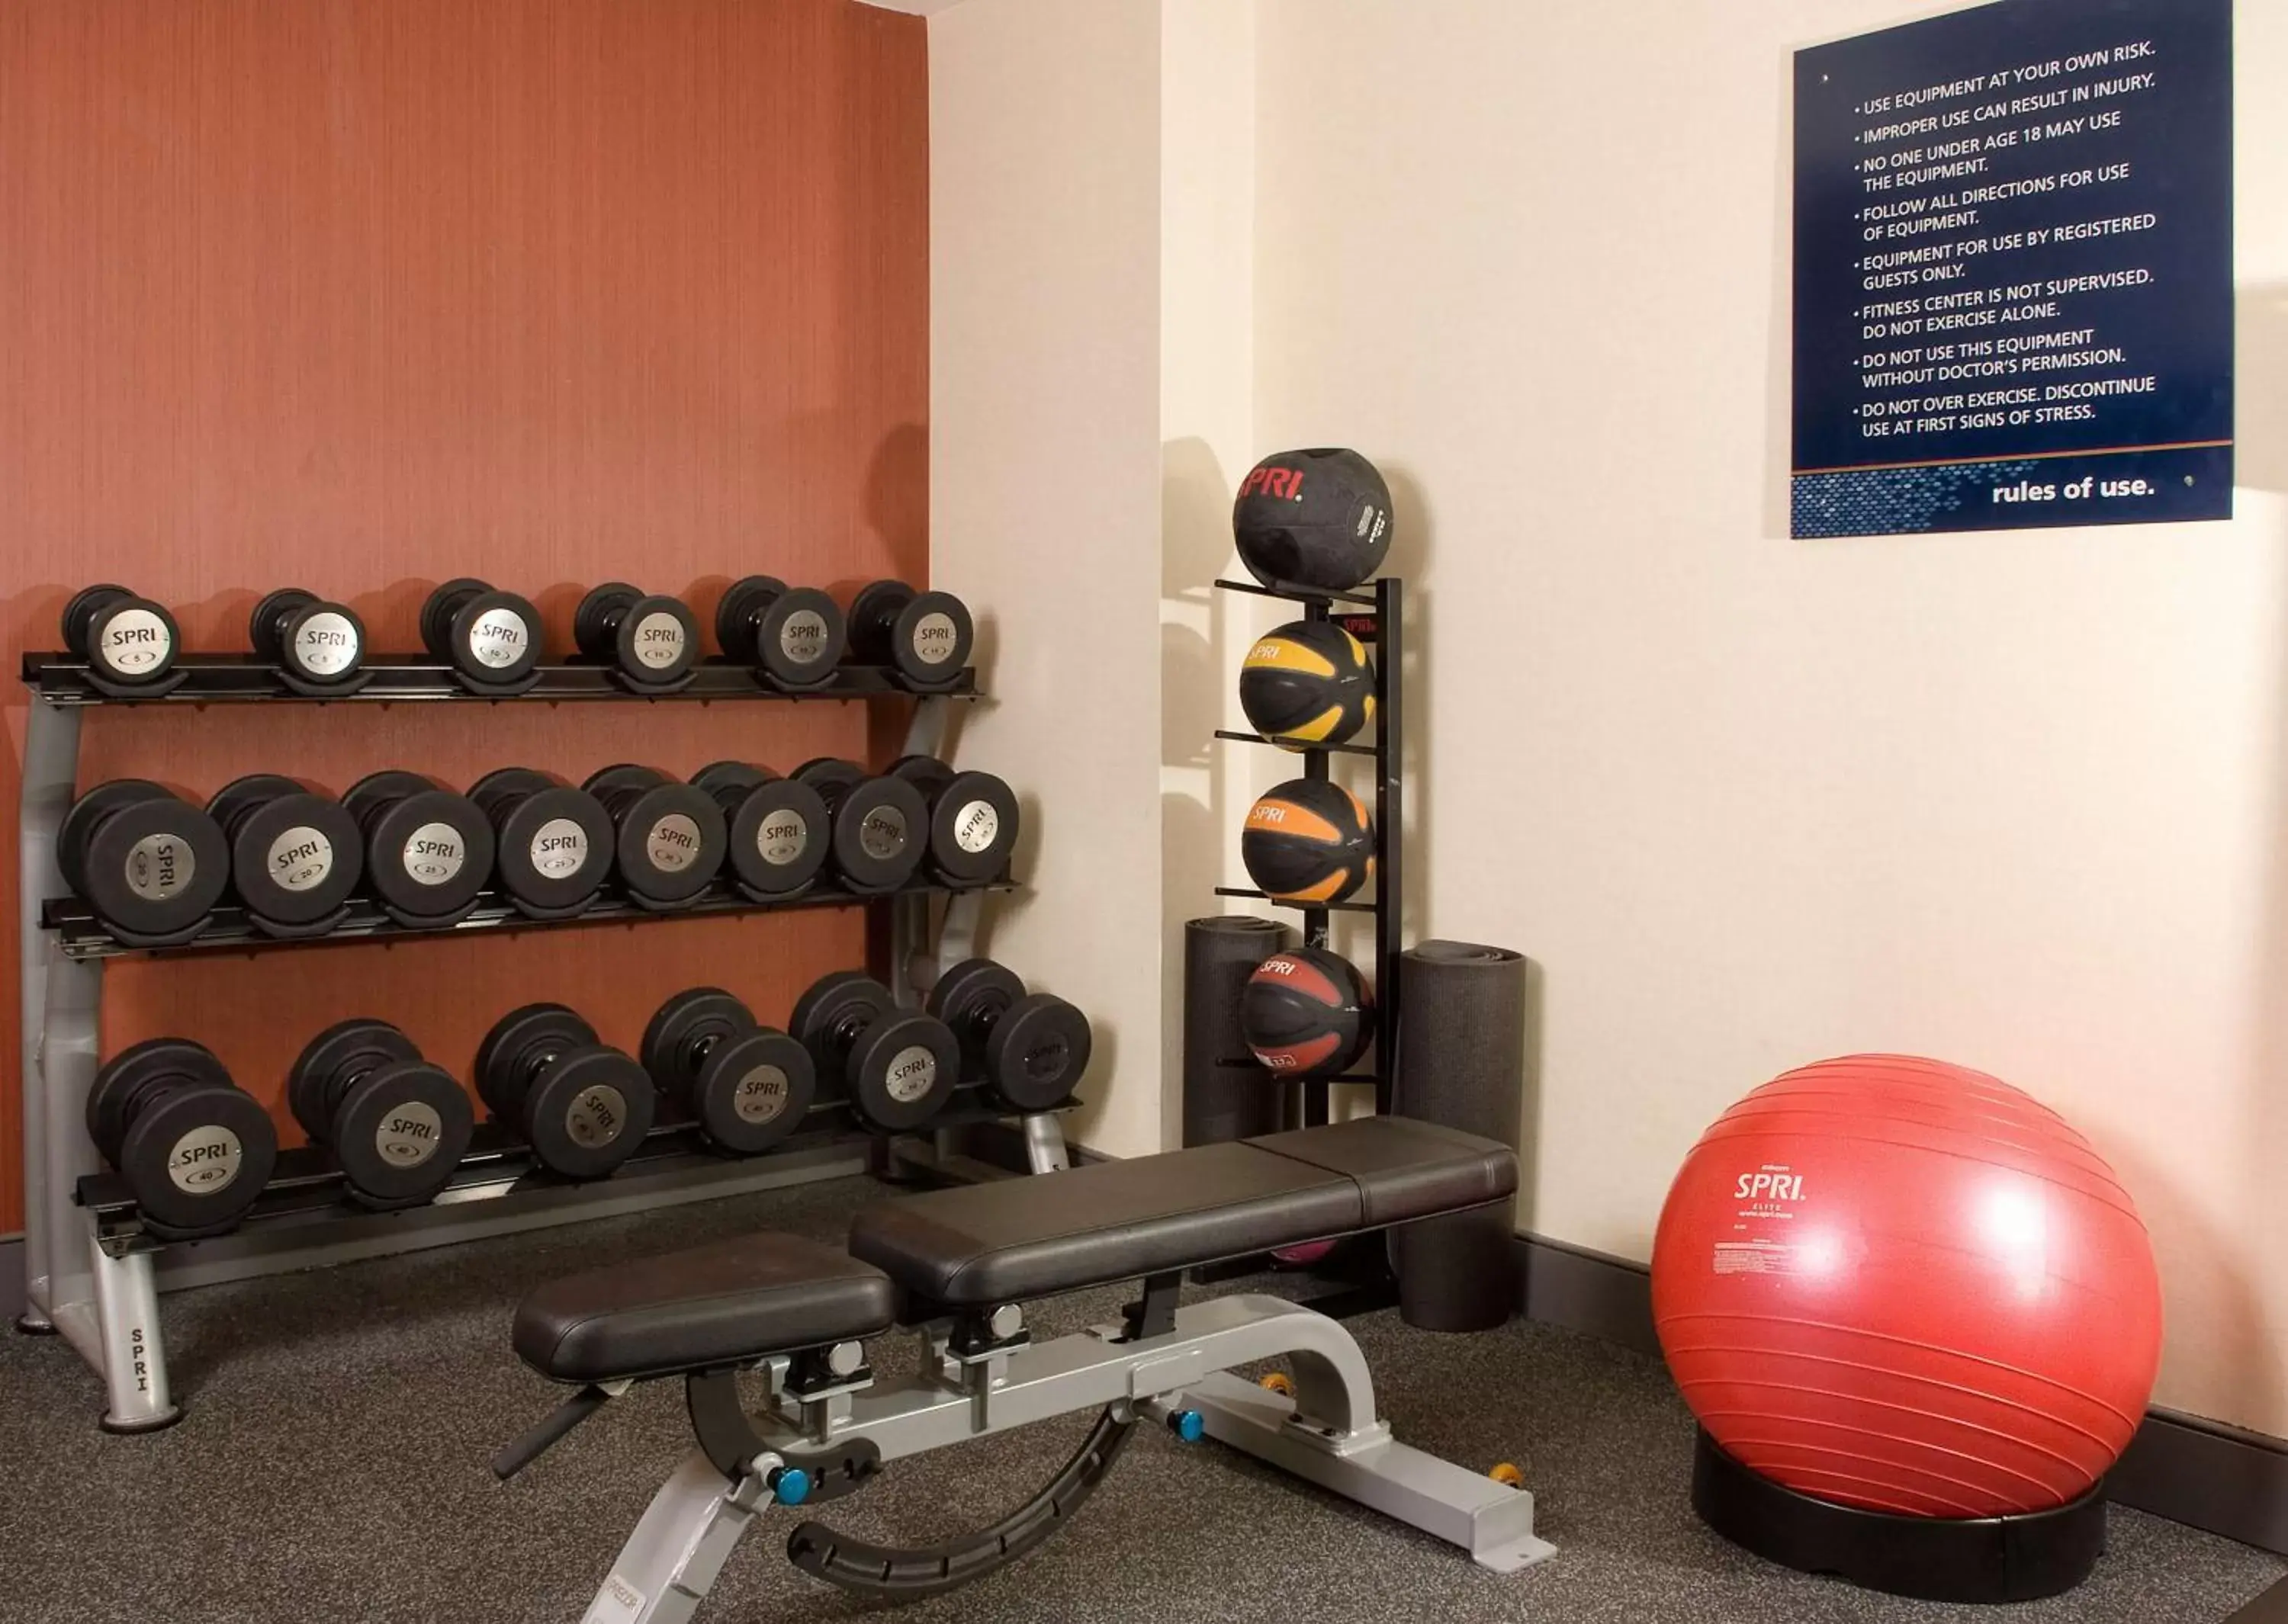 Fitness centre/facilities, Fitness Center/Facilities in Hampton Inn Orlando Near Universal Blv/International Dr